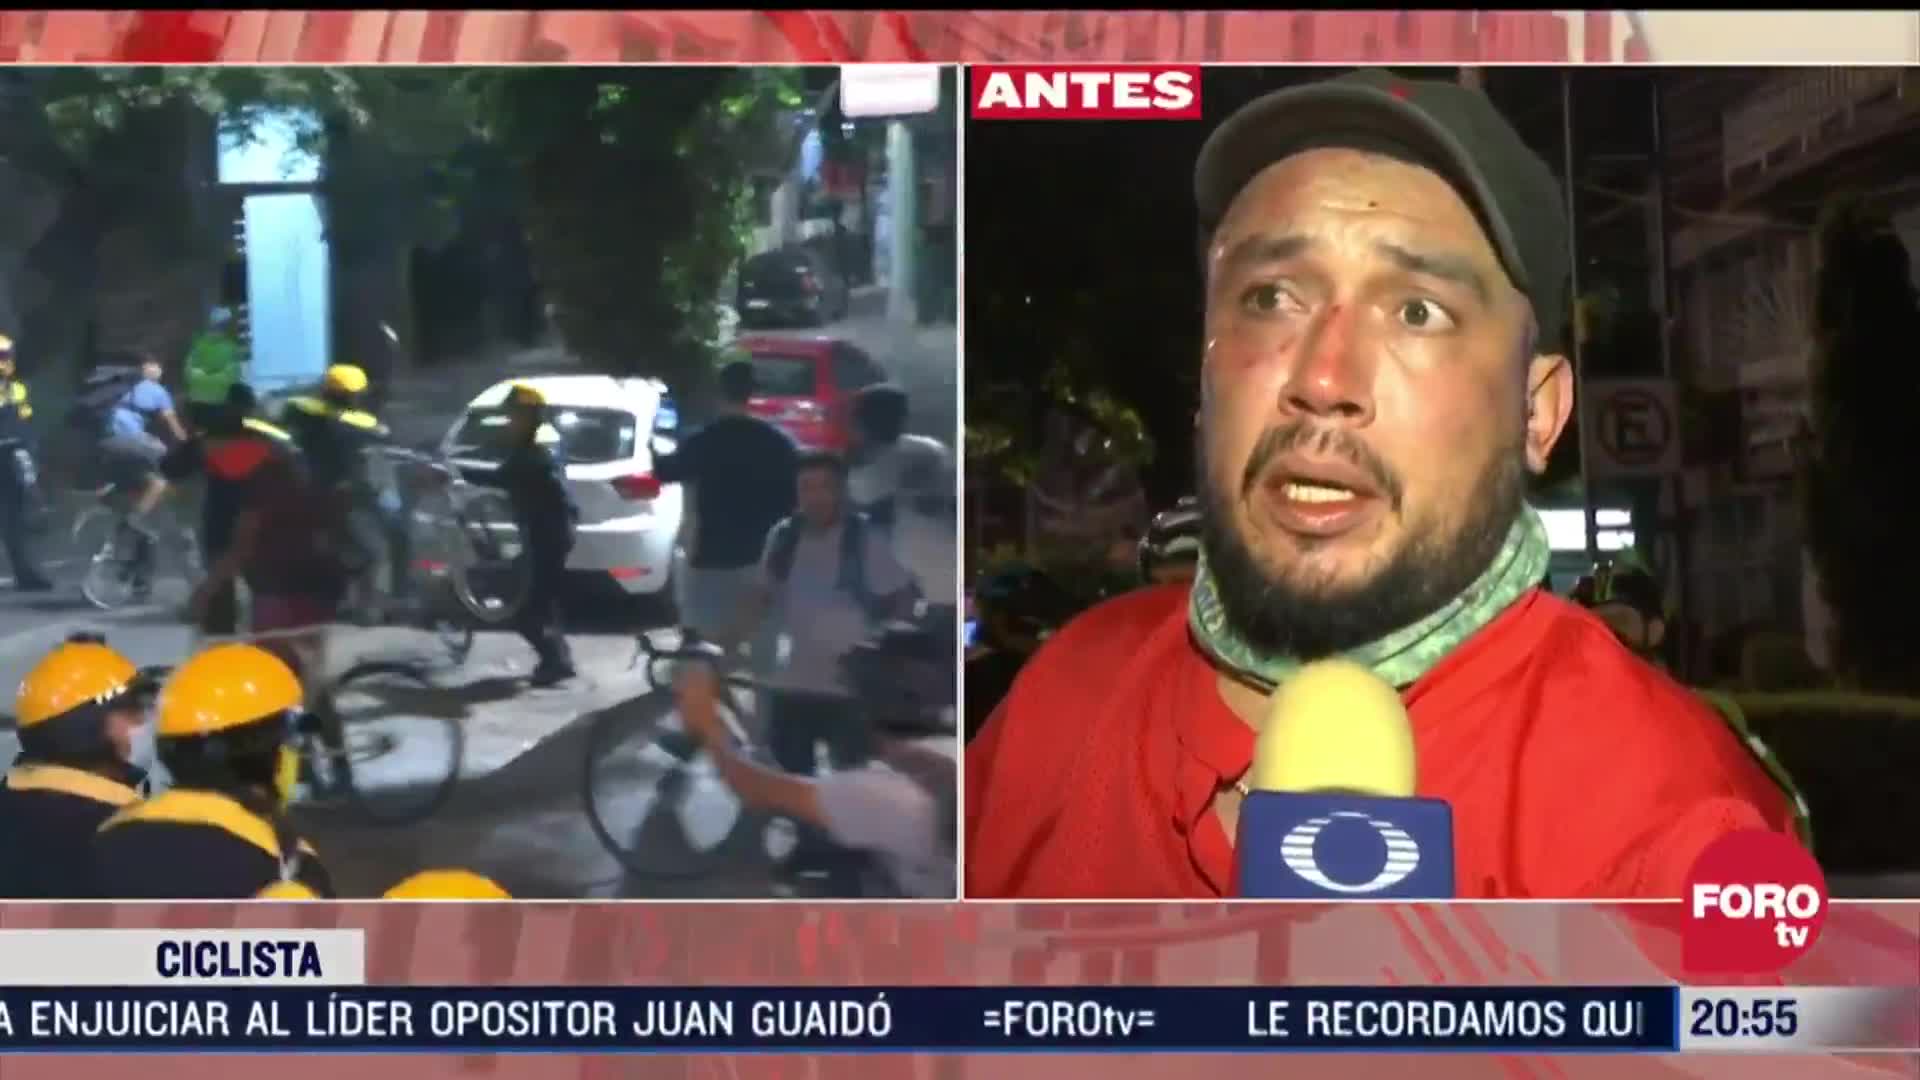 ciclista golpeado por policias de cdmx narra los hechos